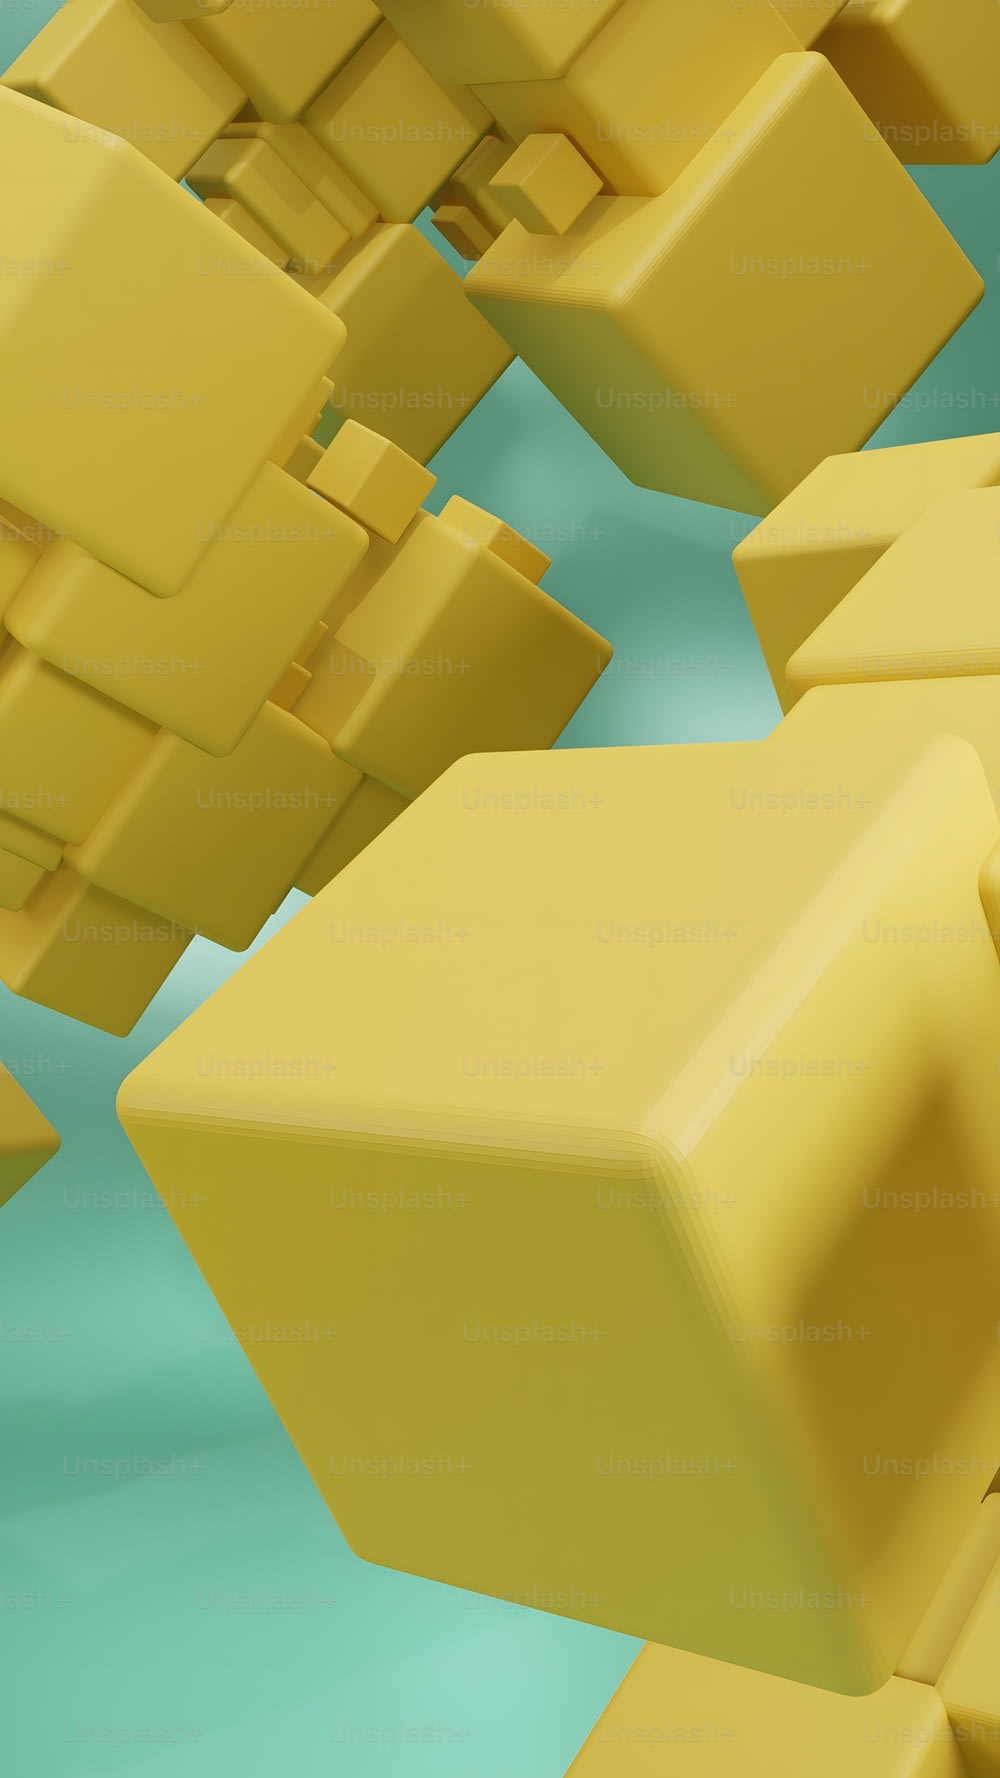 Un montón de cubos amarillos flotando en el aire